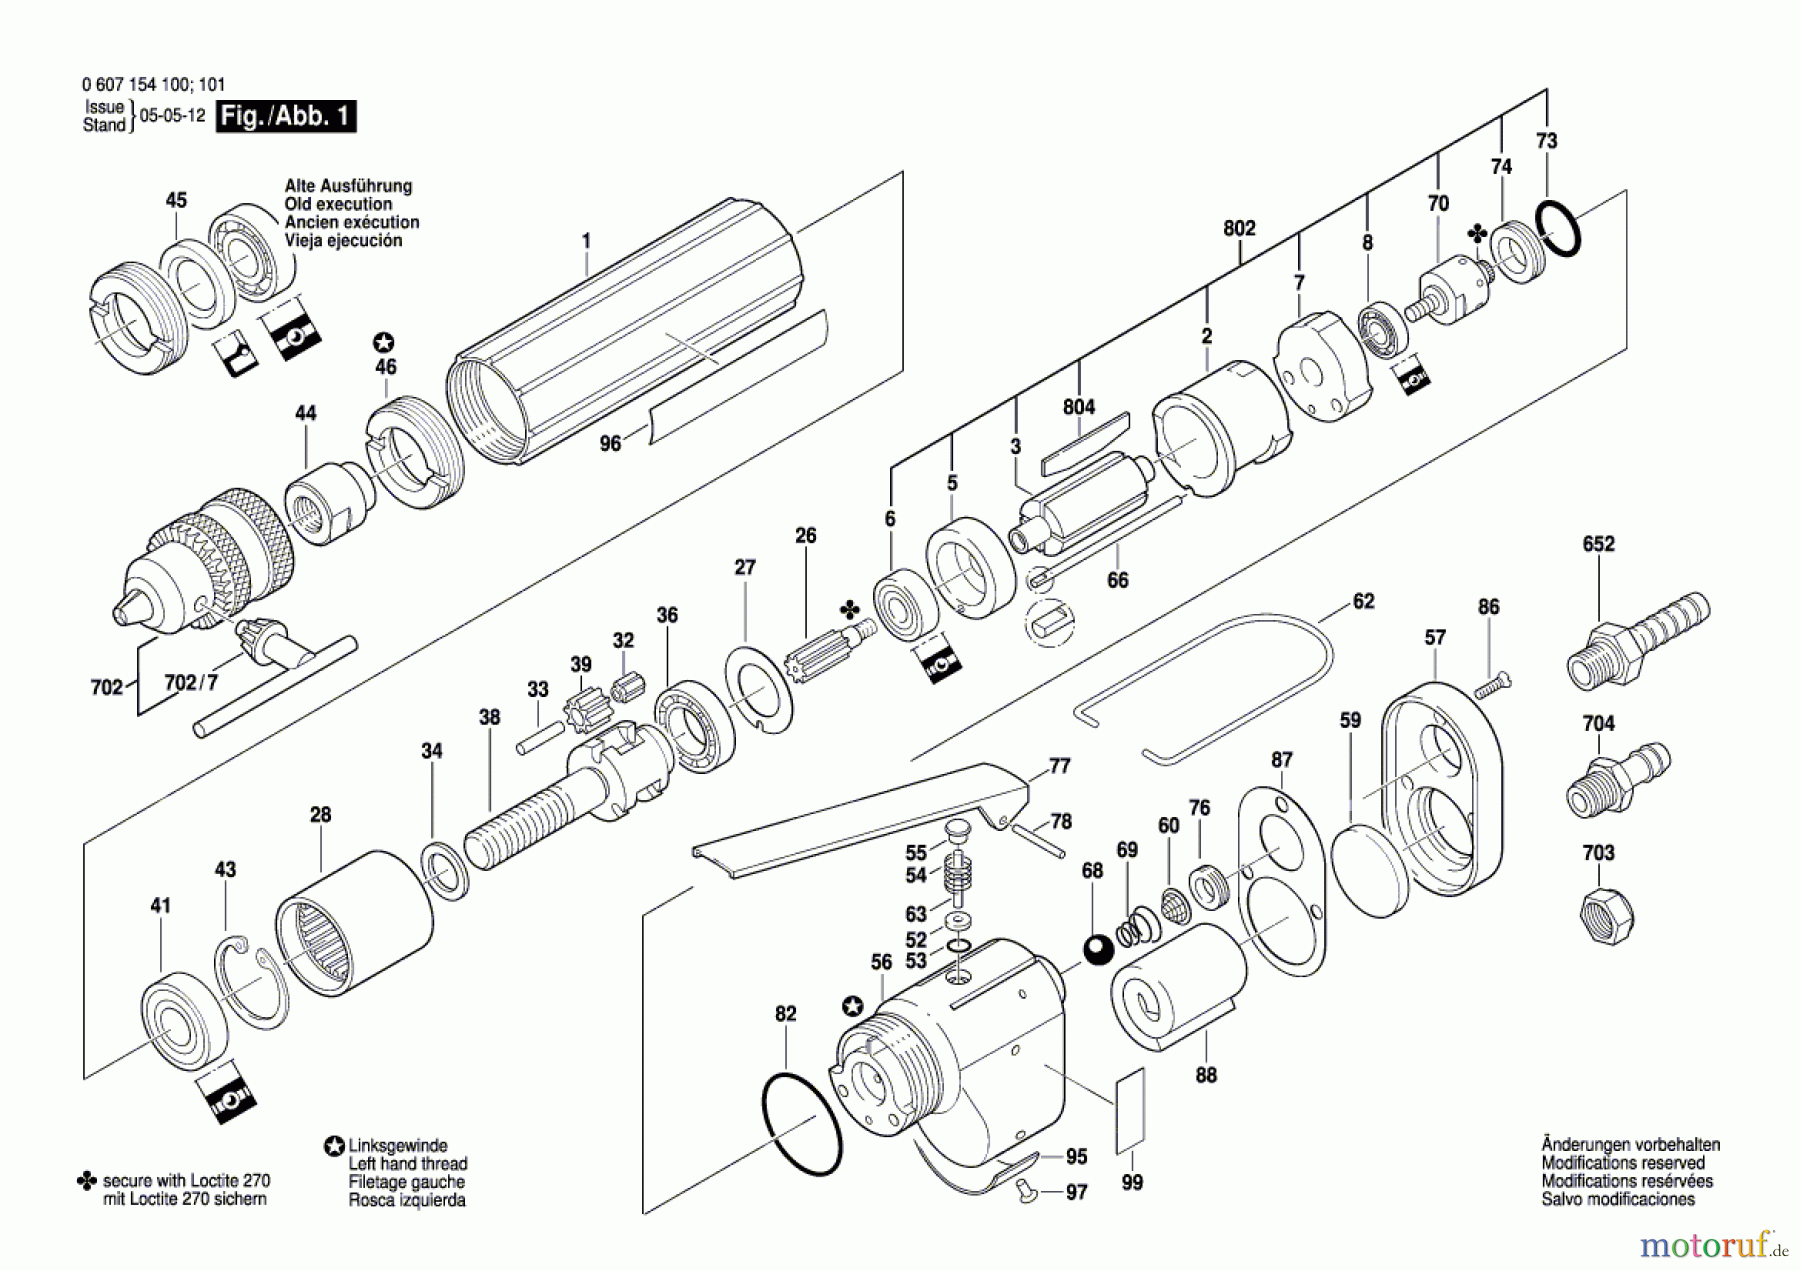  Bosch Werkzeug Pw-Bohrmaschine-Ind 120 WATT-SERIE Seite 1